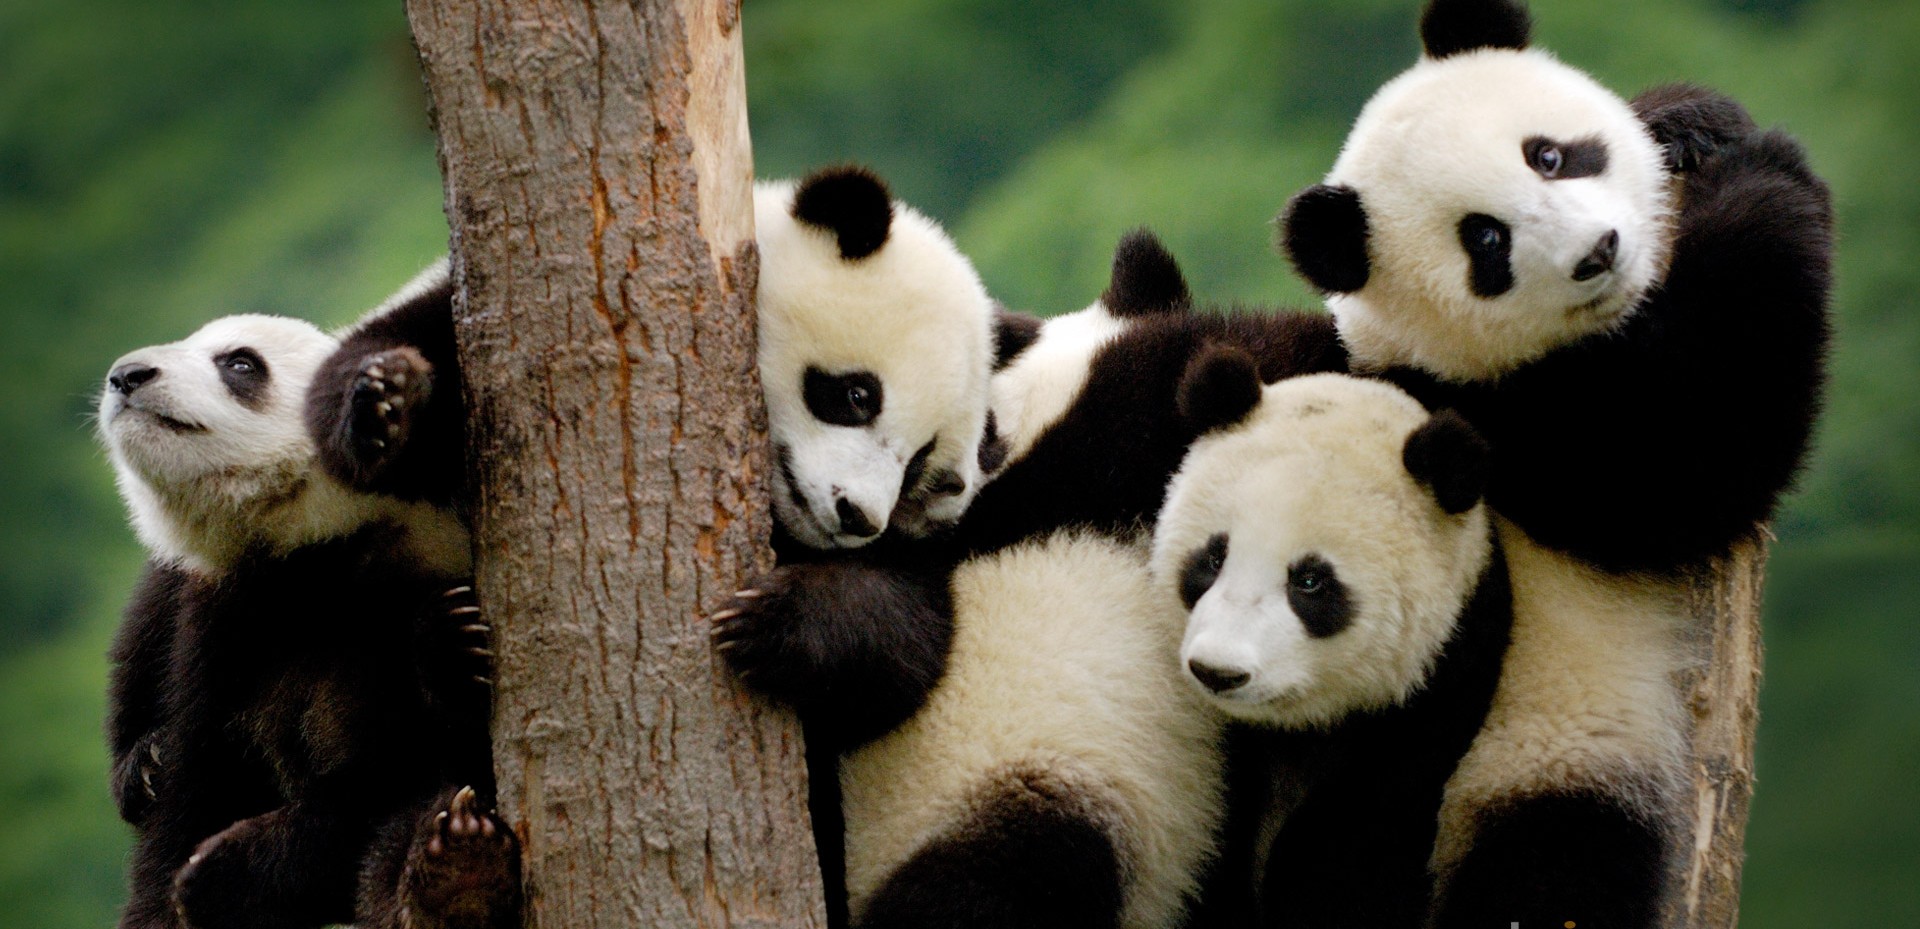 Die maatskappy van pandas in die dieretuin